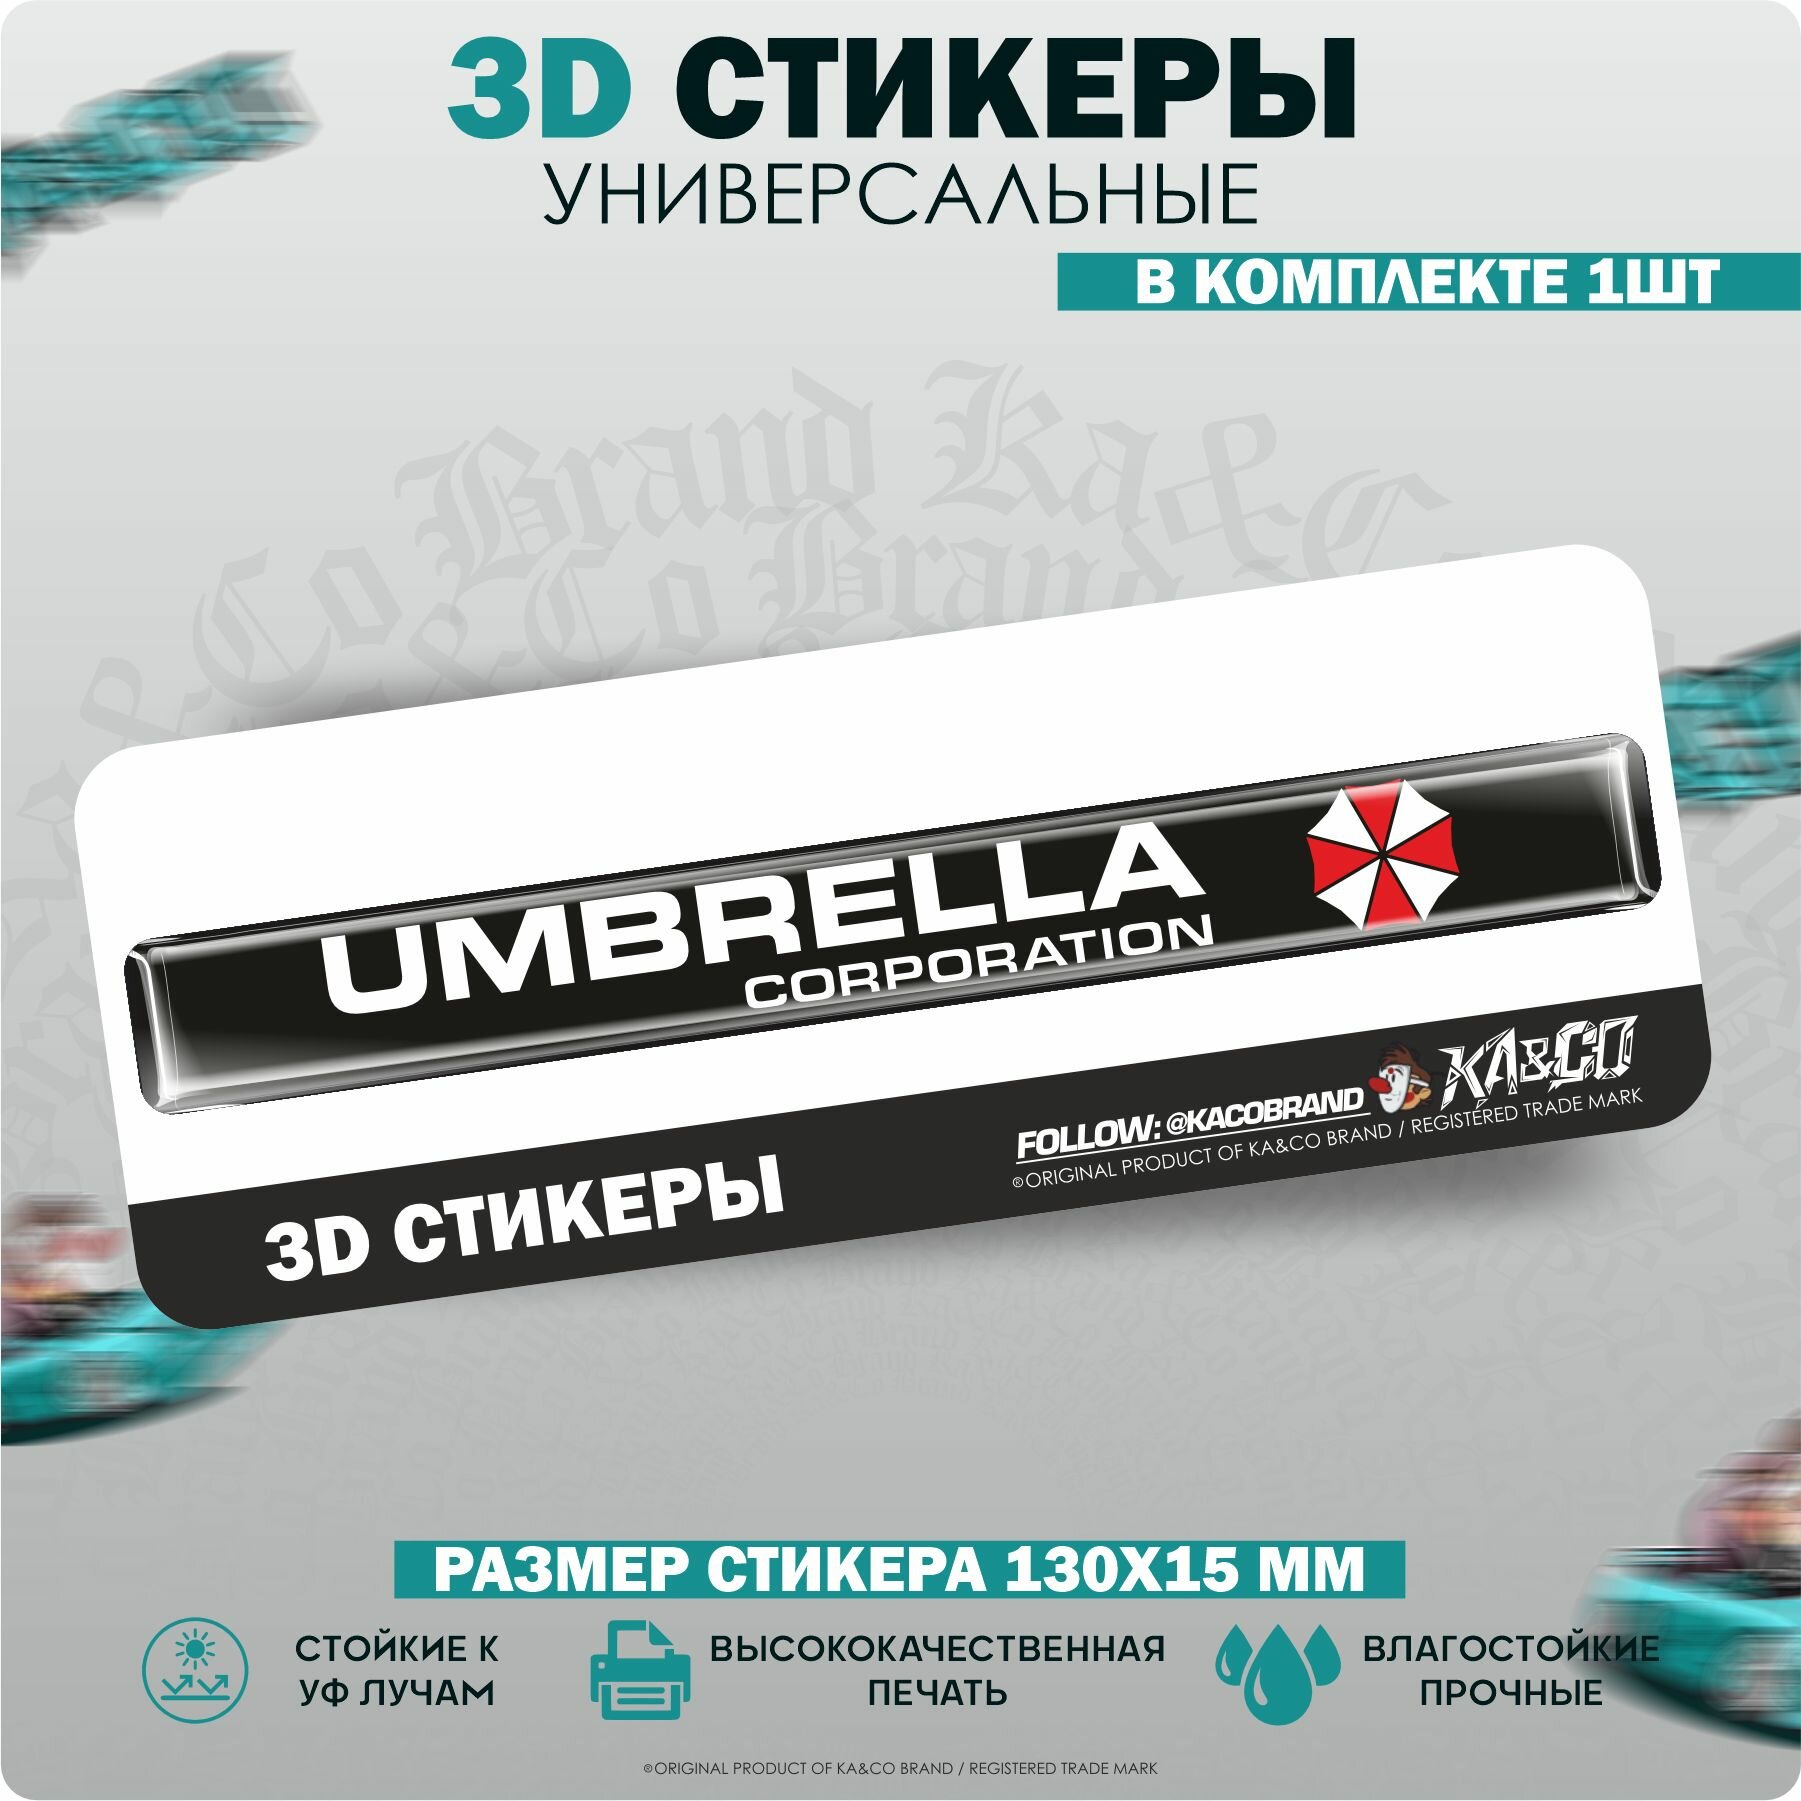 3D Наклейки стикеры шильдик Амбрелла Umbrella Corporation